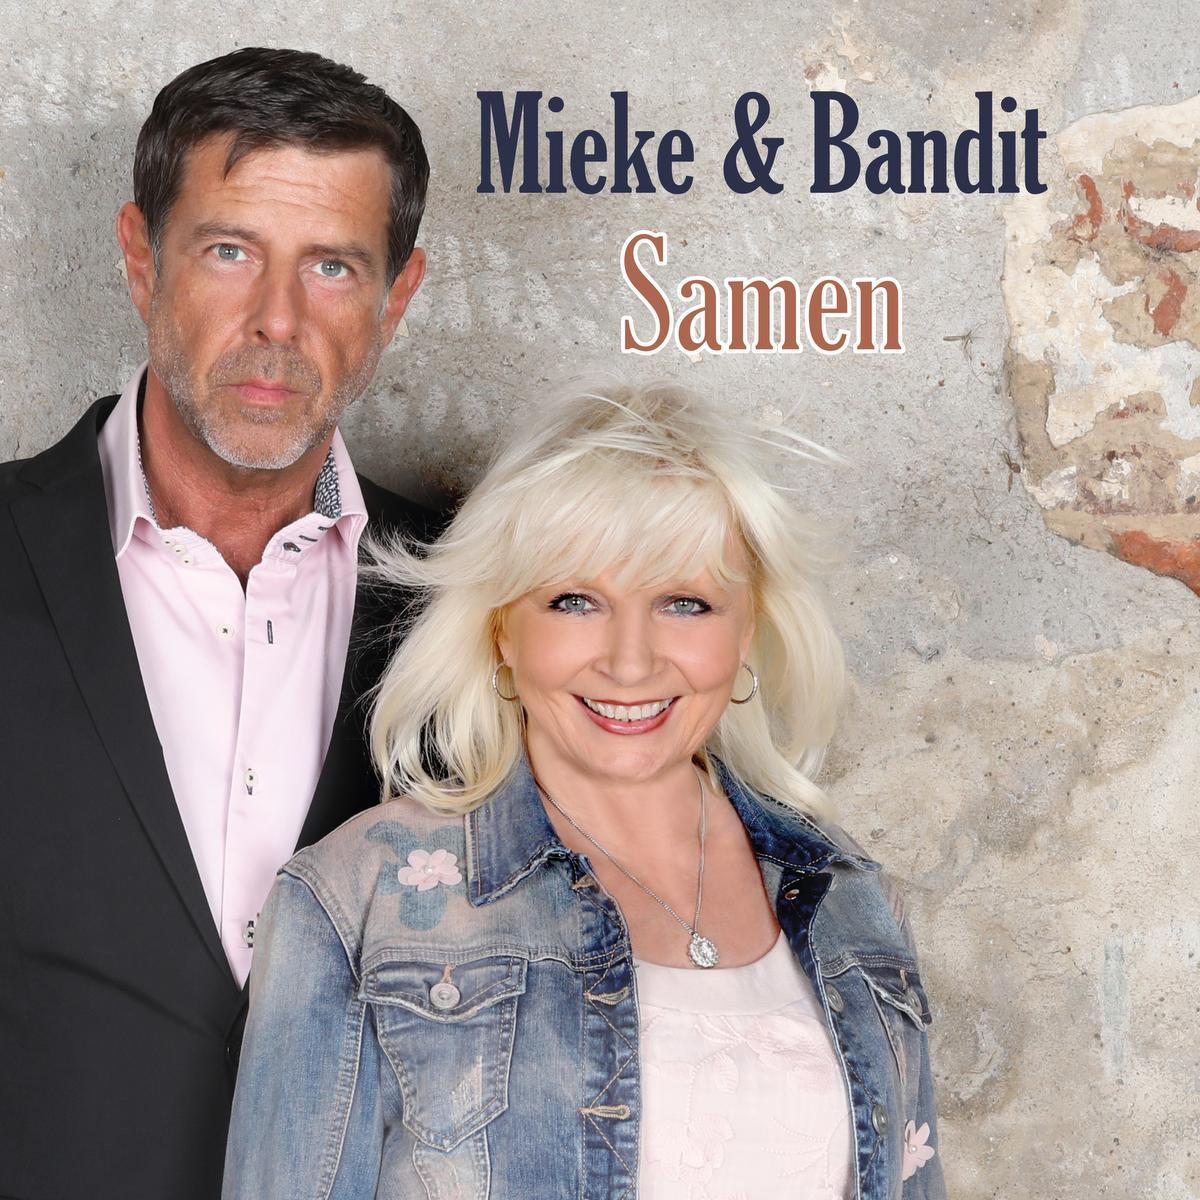 Bandit en Mieke besloten samen om nieuw album 'Samen' te verplaatsen naar eind oktober